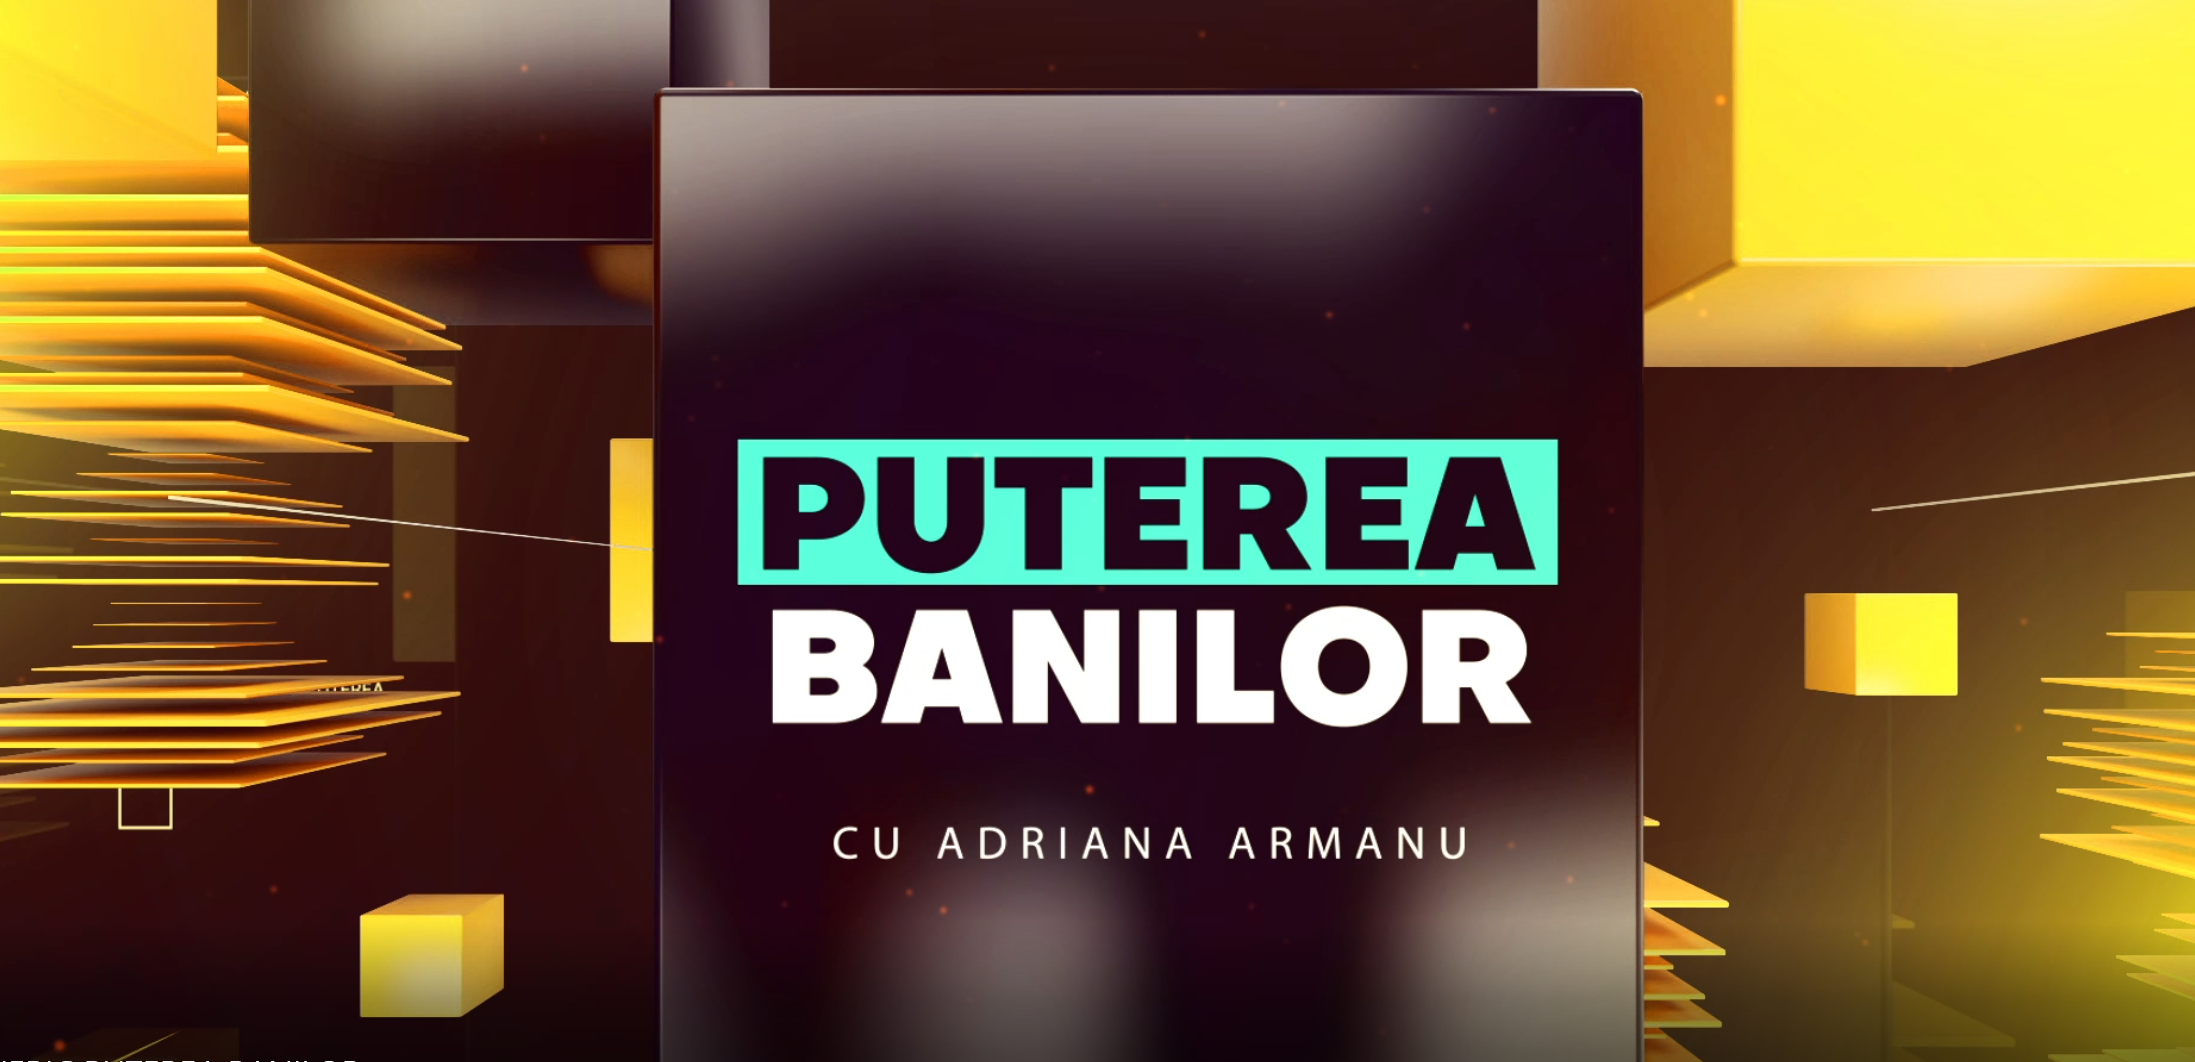 PS News TV | „Puterea Banilor” cu Adriana Armanu